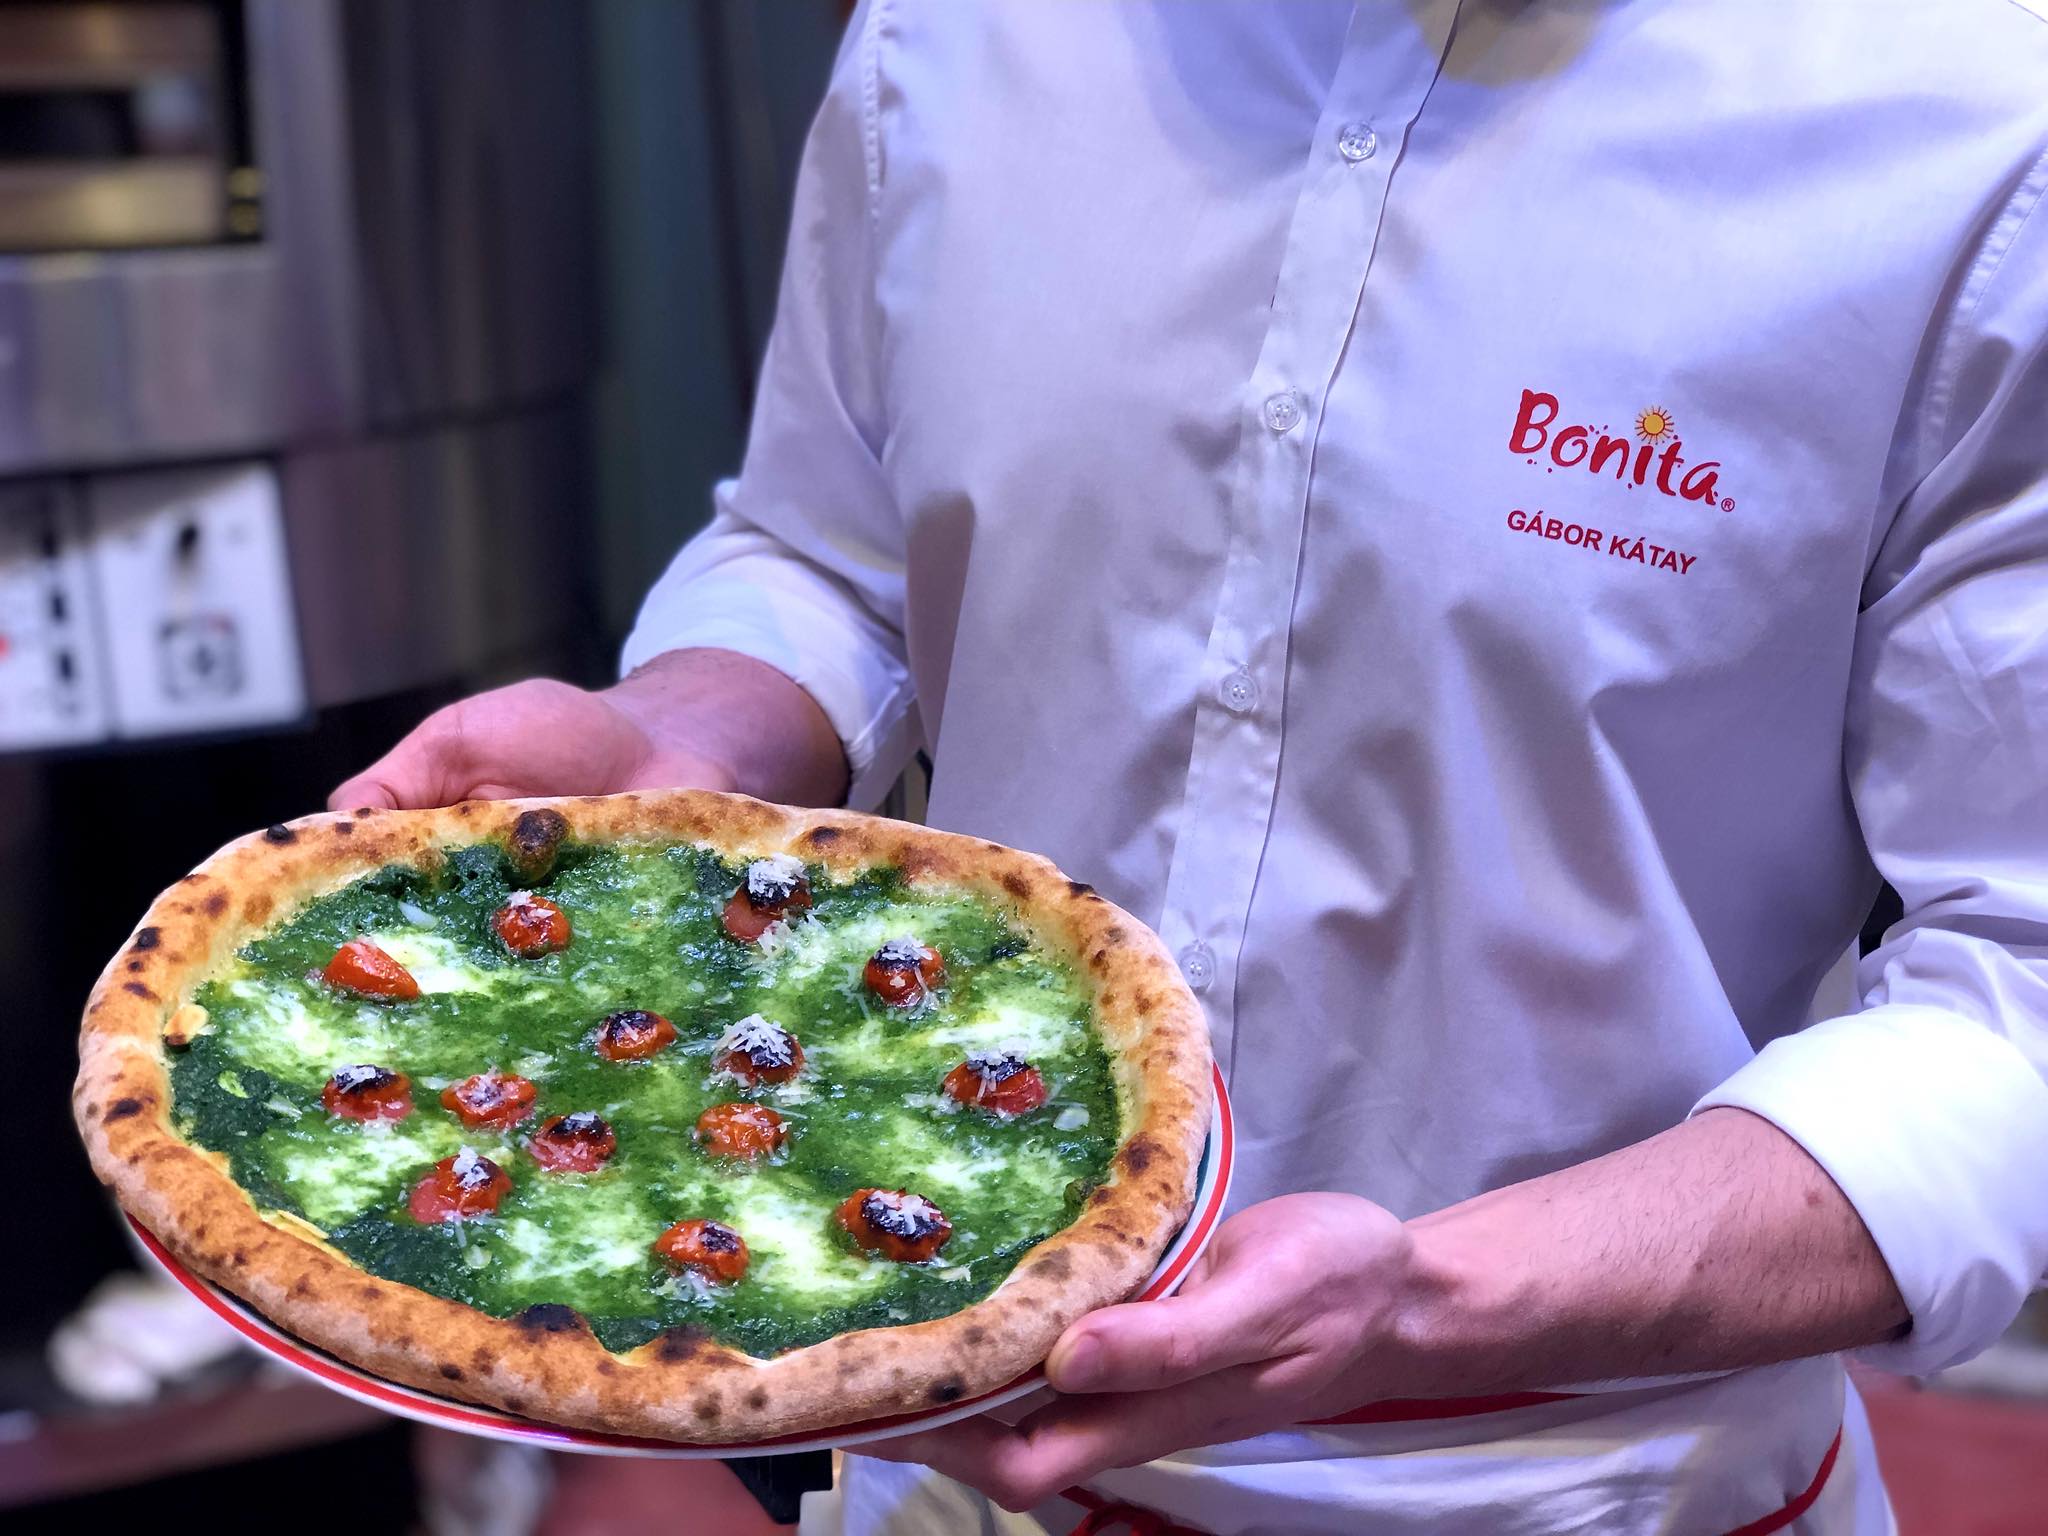 A pármai pizza világbajnokság egyik versenypizzája klasszikus kategóriában.